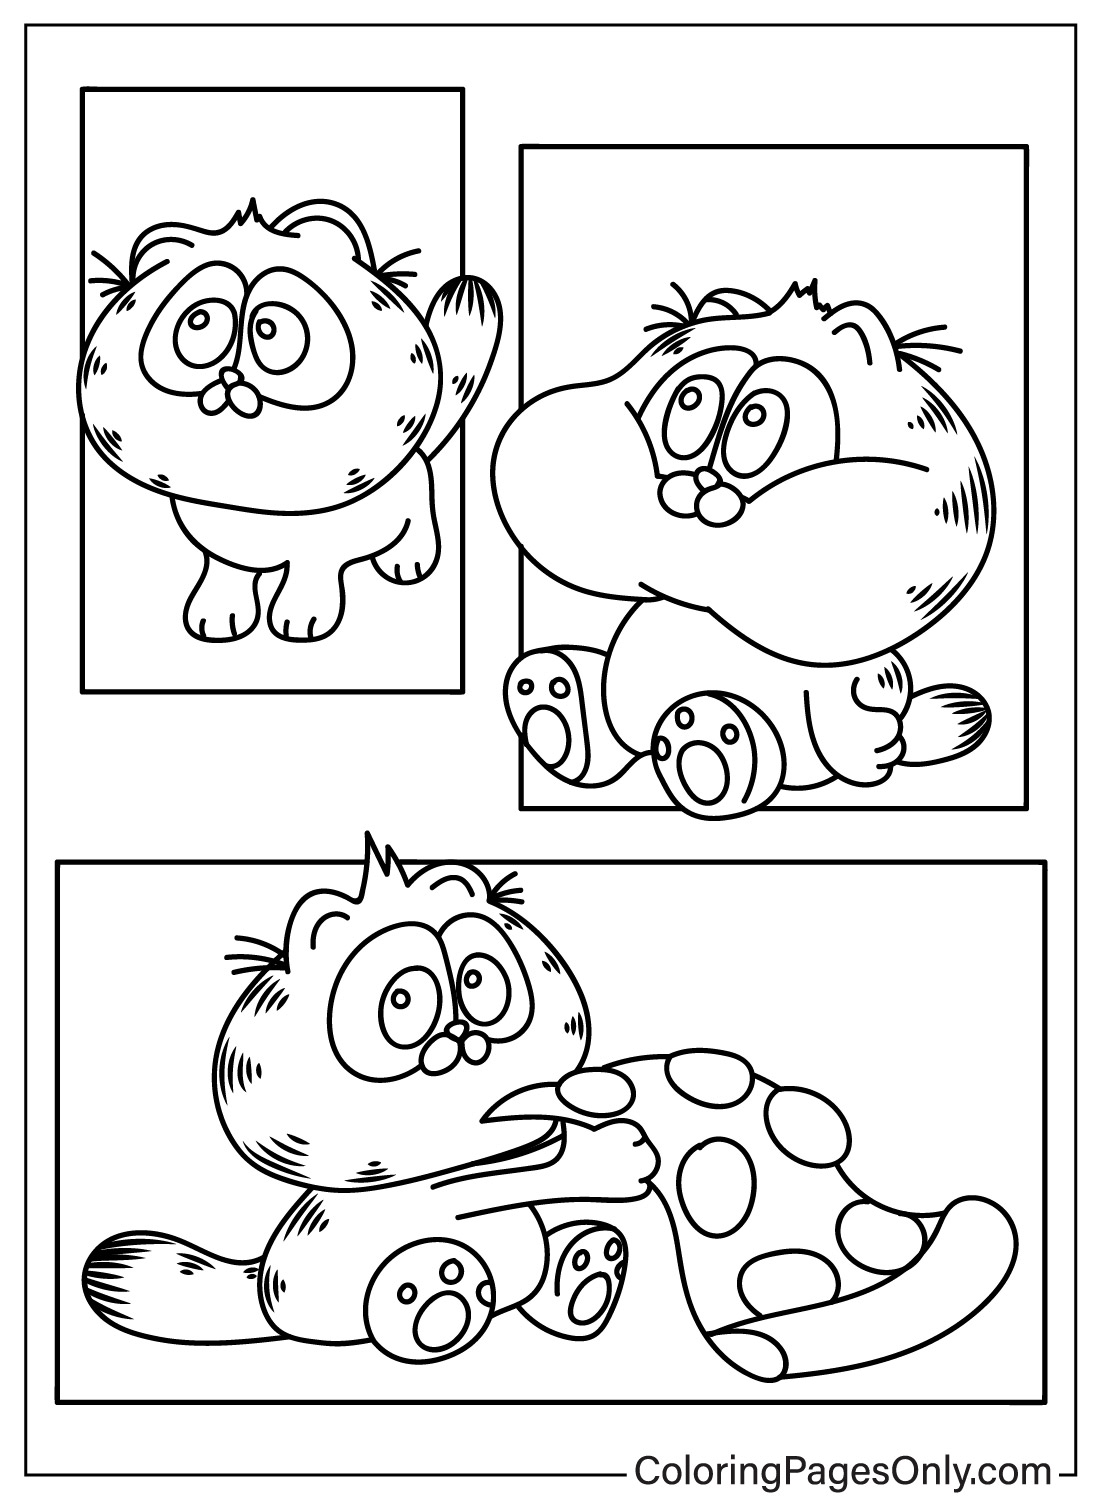 Linda página para colorear de Garfield de Garfield